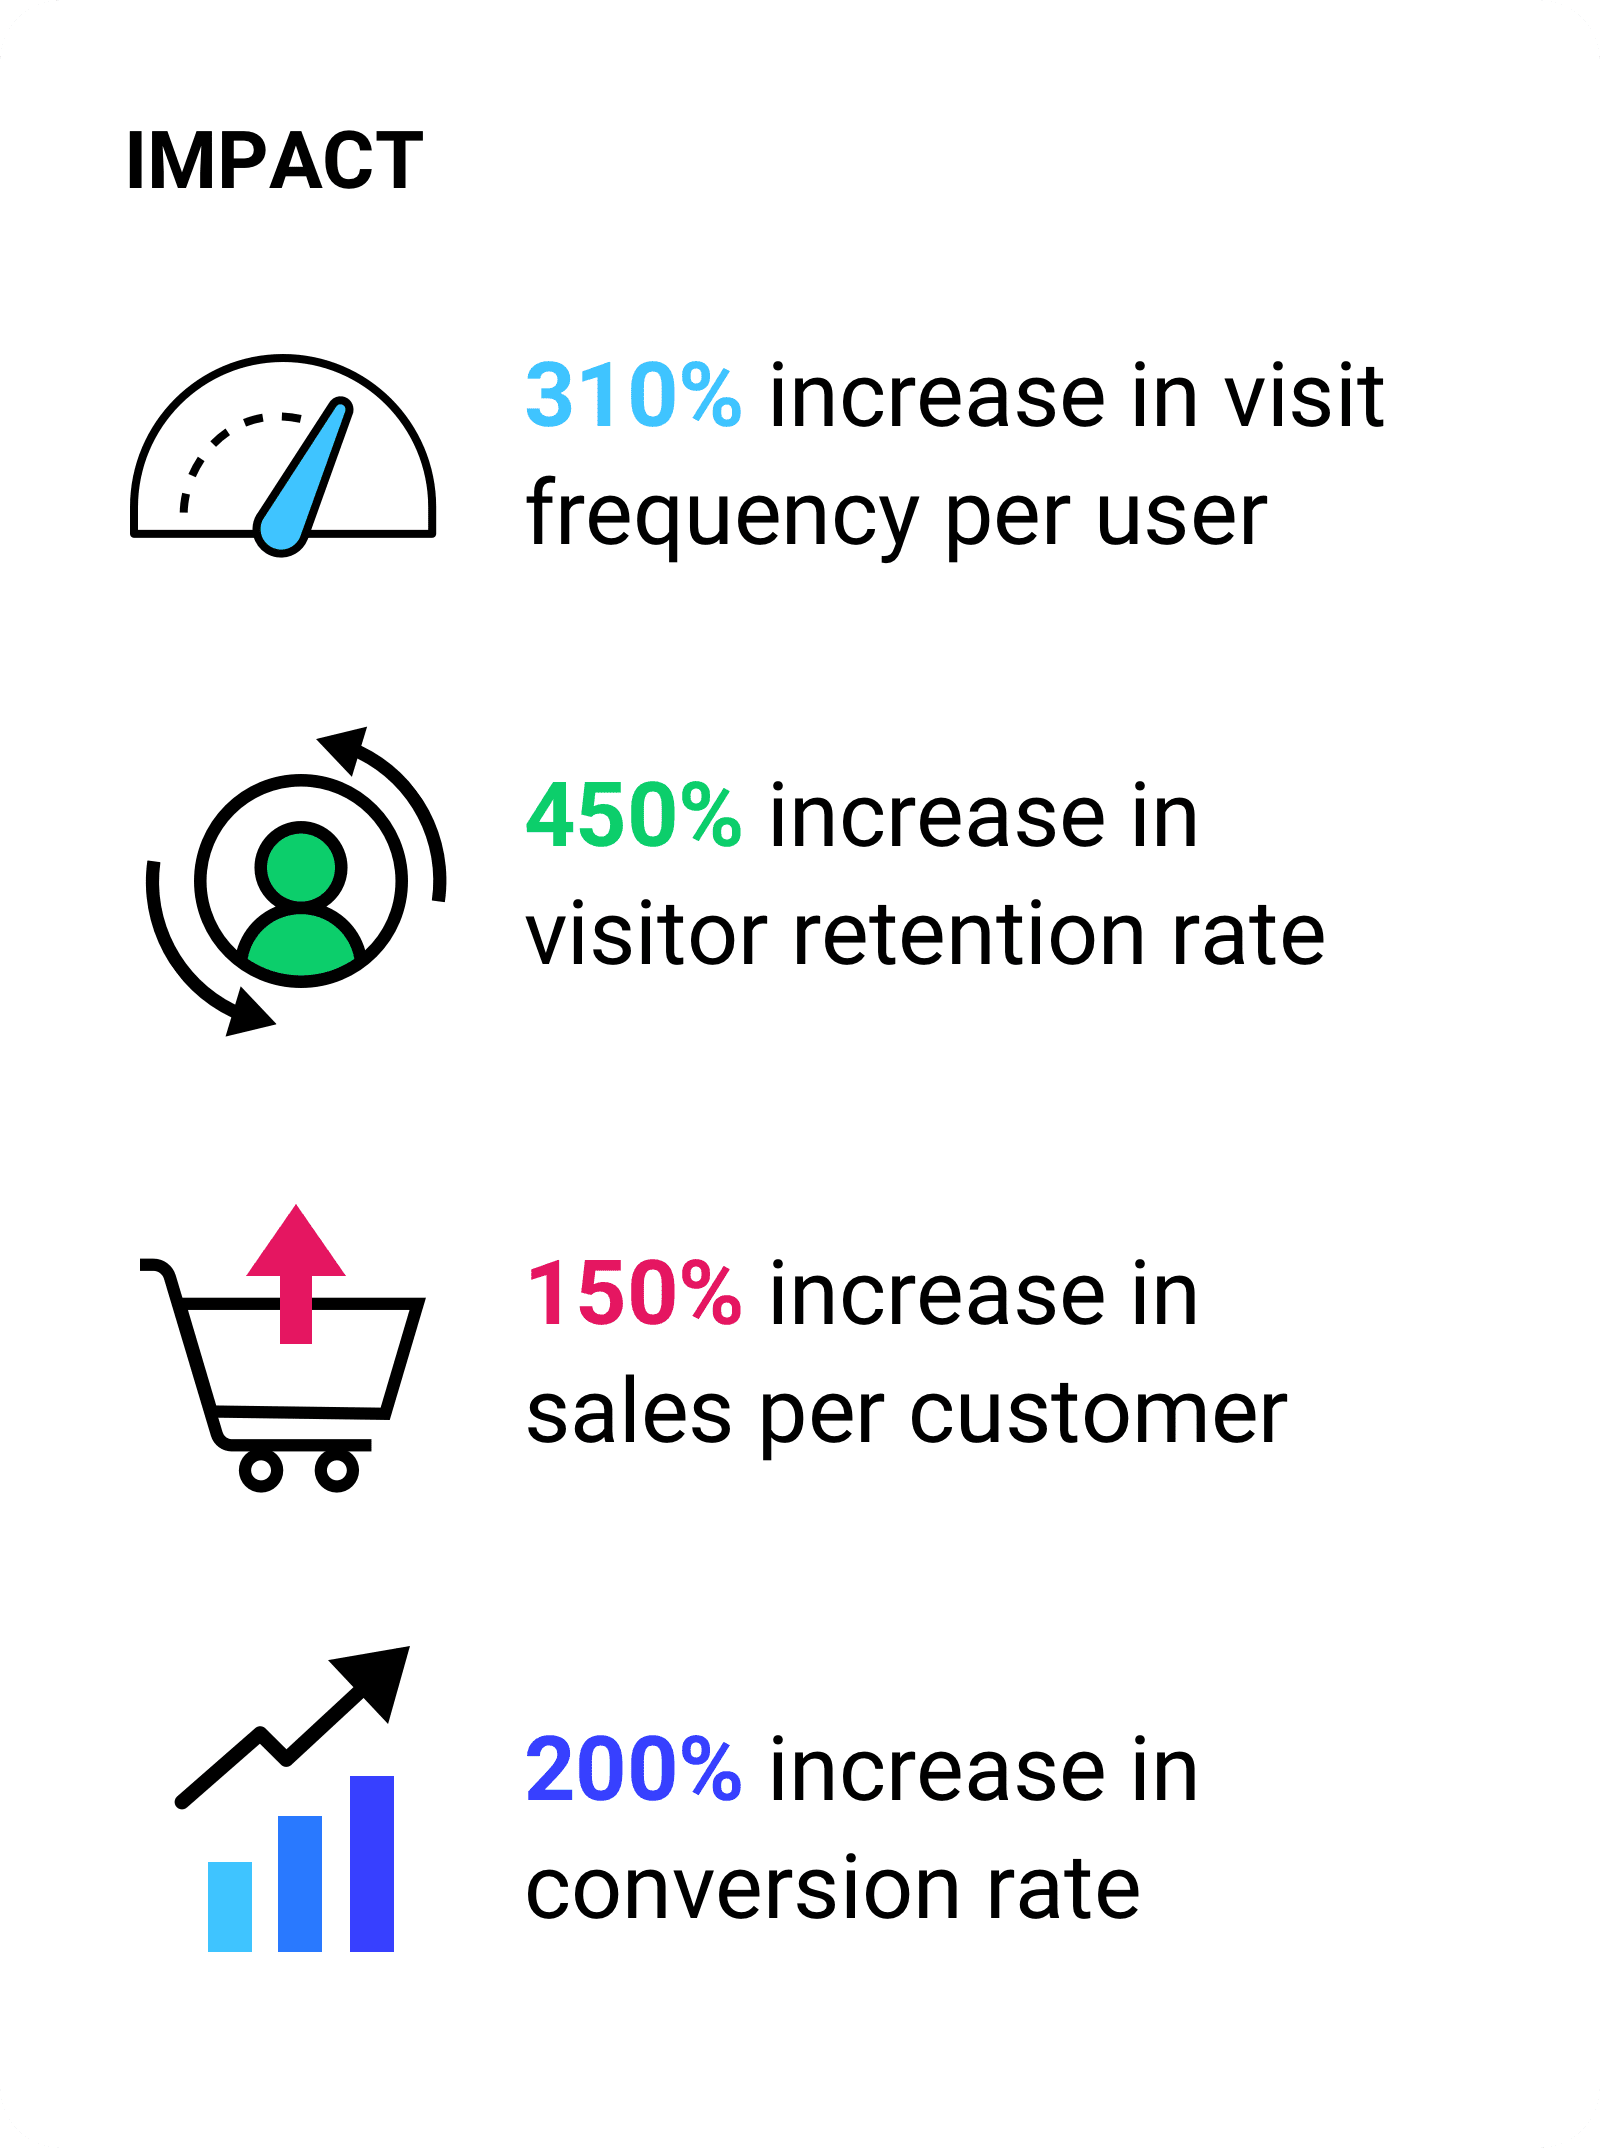 每位使用者的造訪頻率增加 310%。訪客留存率提高 450%每位客戶帶來的銷售量增加 150%，轉換率提高 200%。